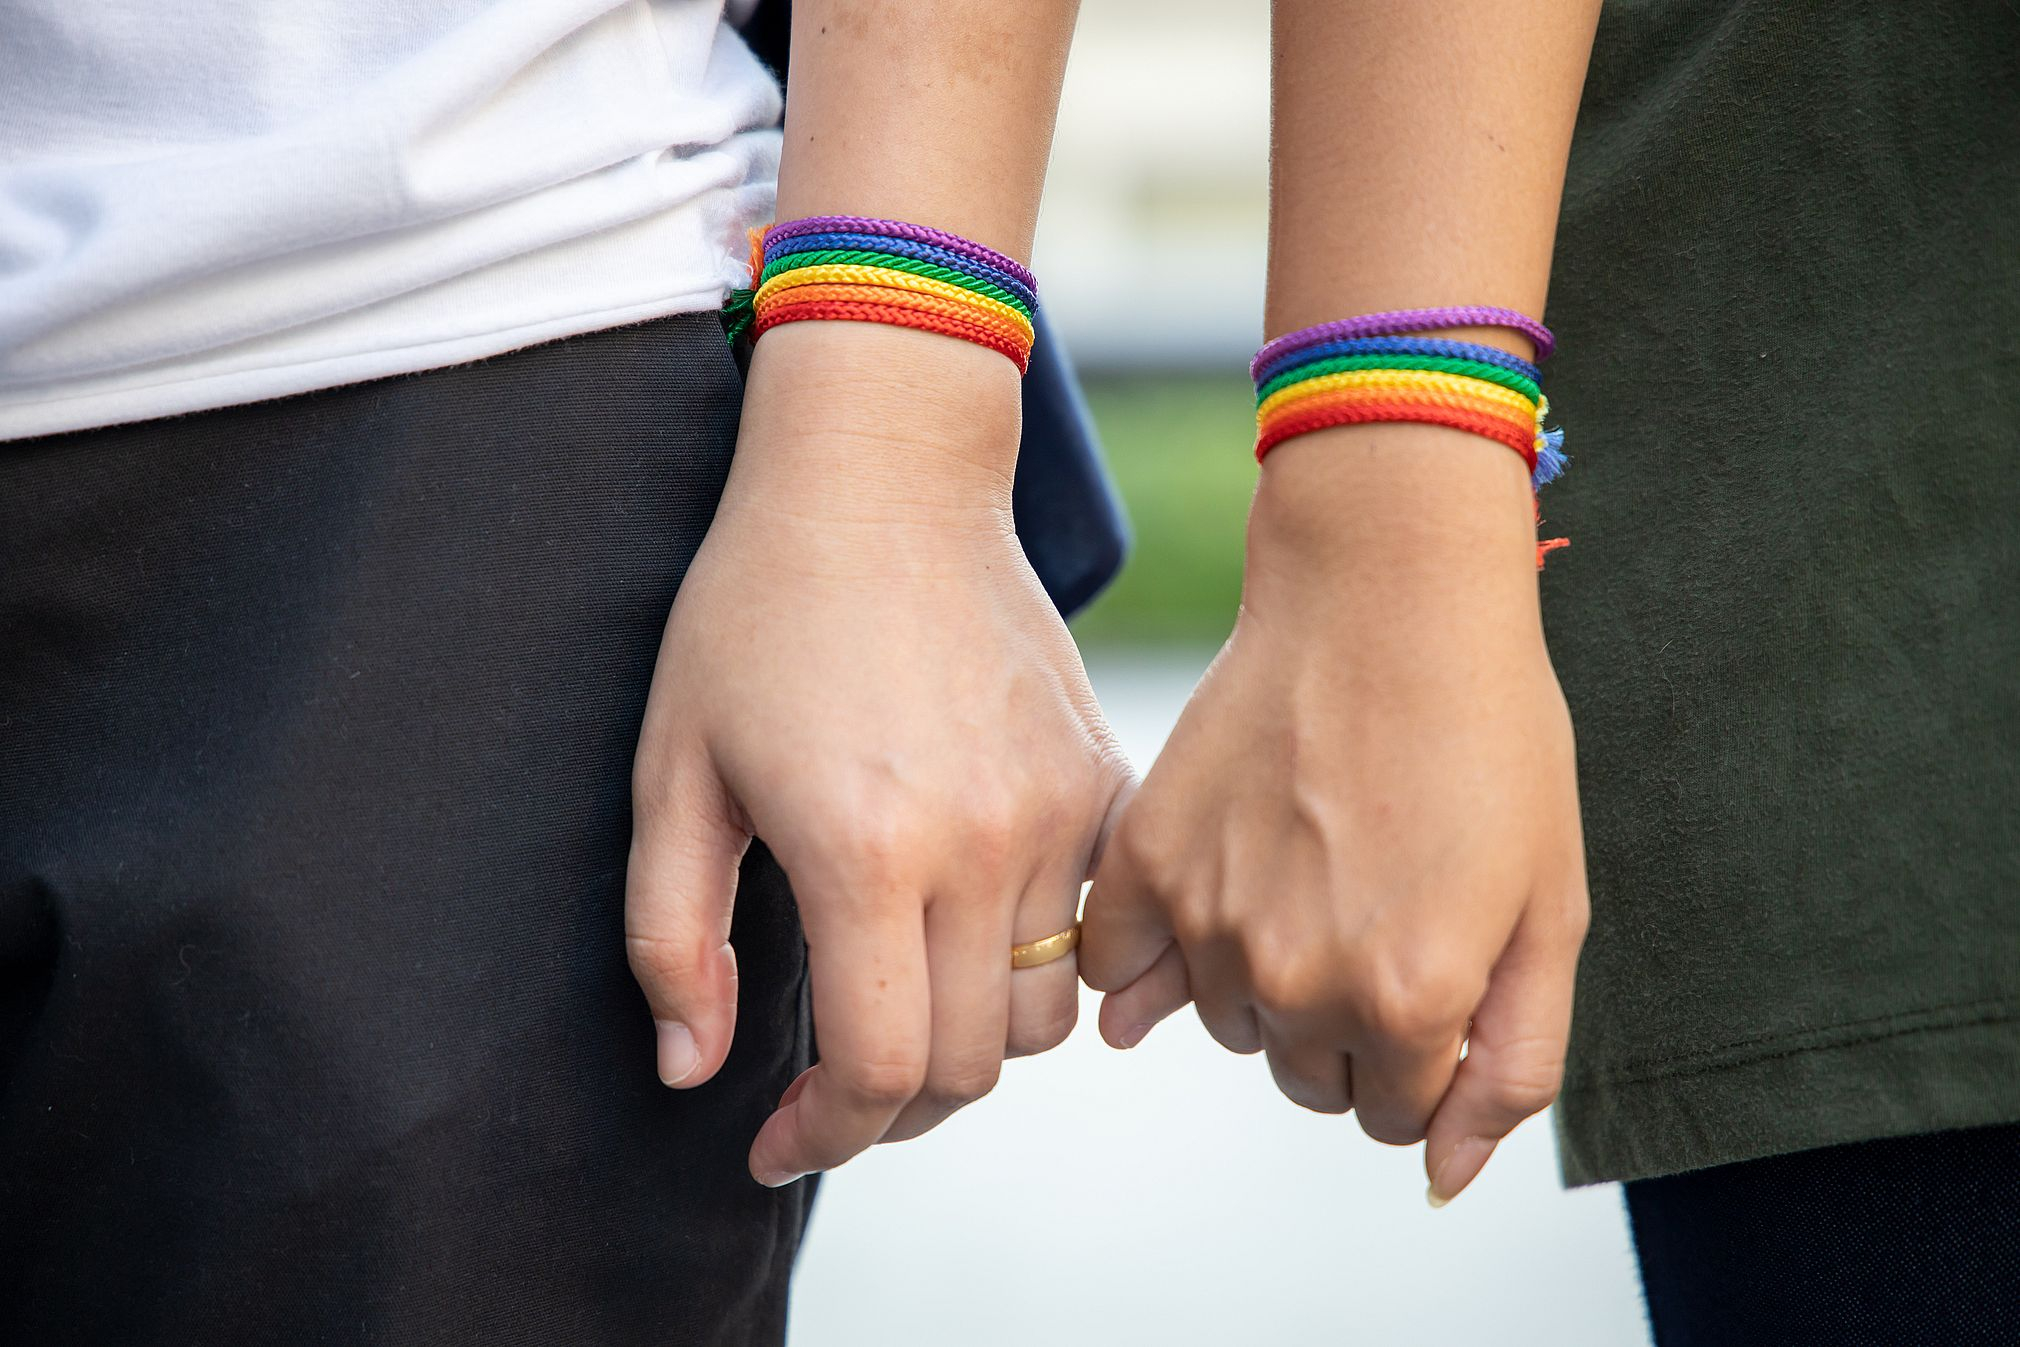 Sondaż: Czy pary jednopłciowe powinny mieć prawo do adopcji dzieci? - INFBusiness